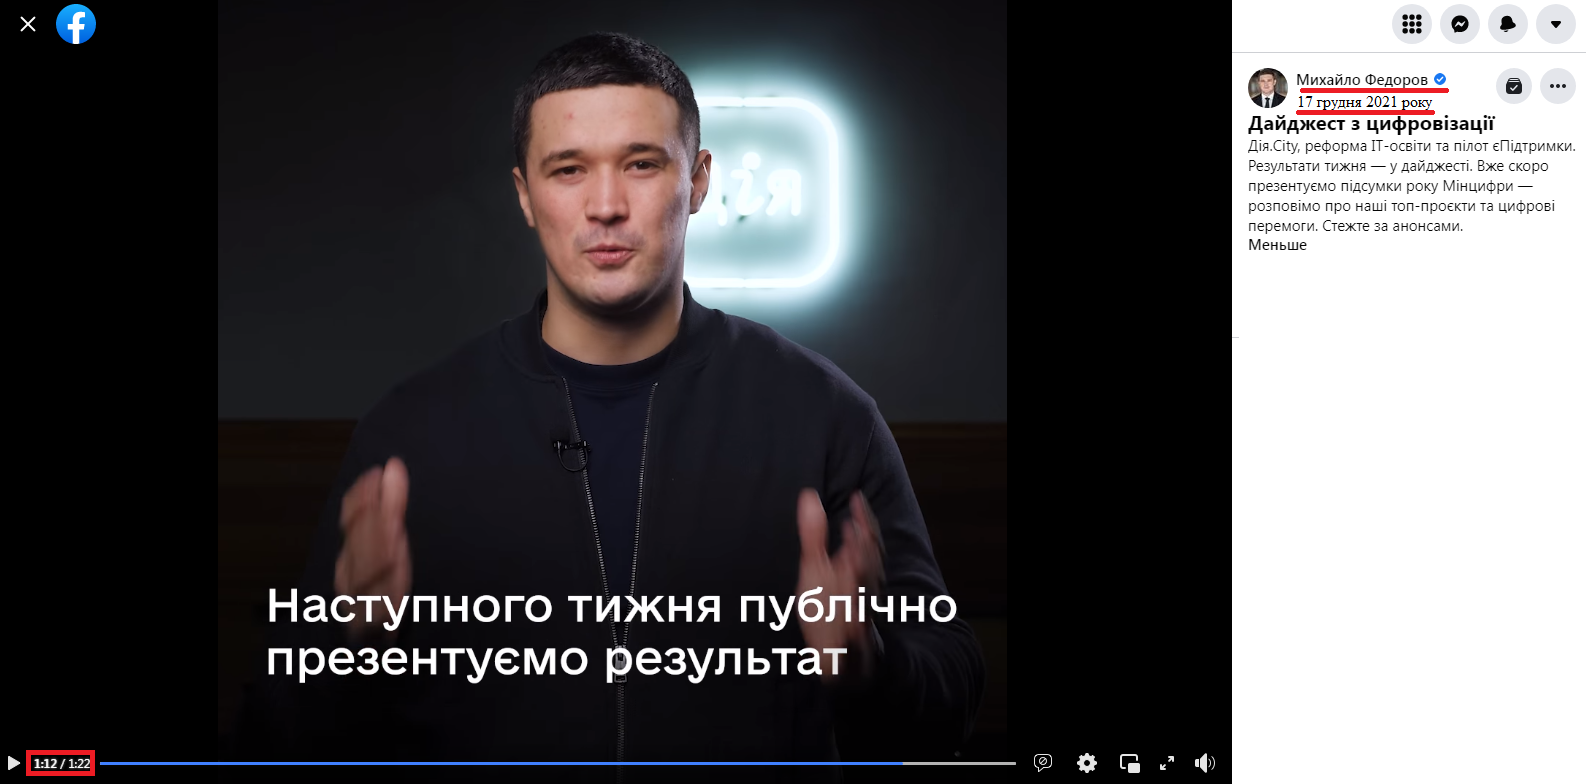 https://www.facebook.com/mykhailofedorov.com.ua/videos/321543039634363/